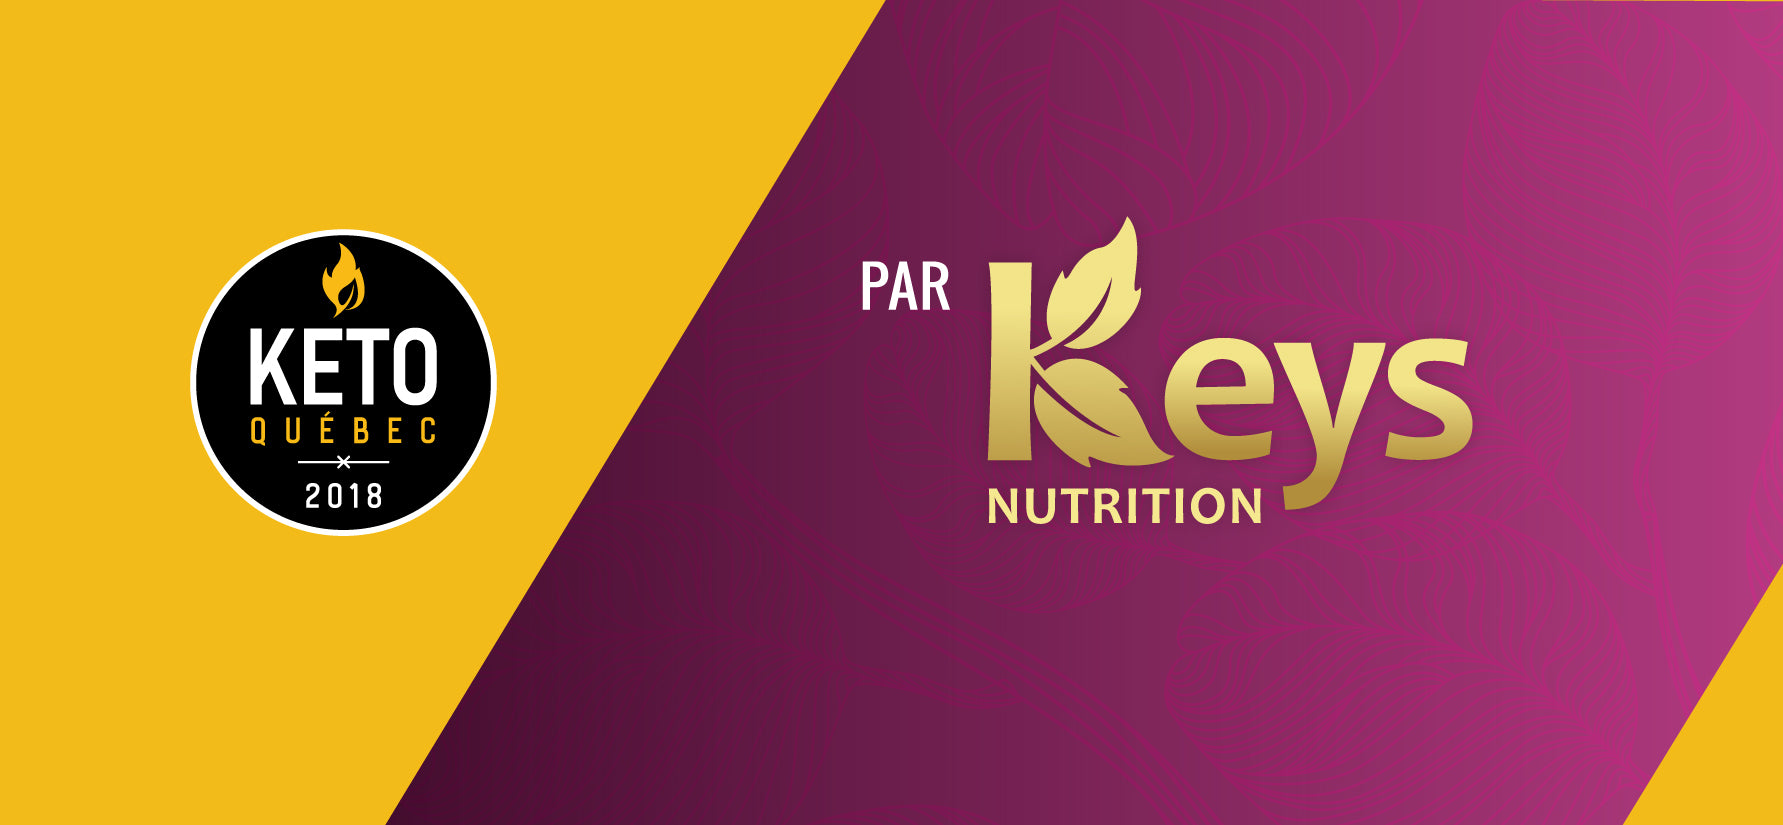 Keto Quebec + Keys Nutrition logos